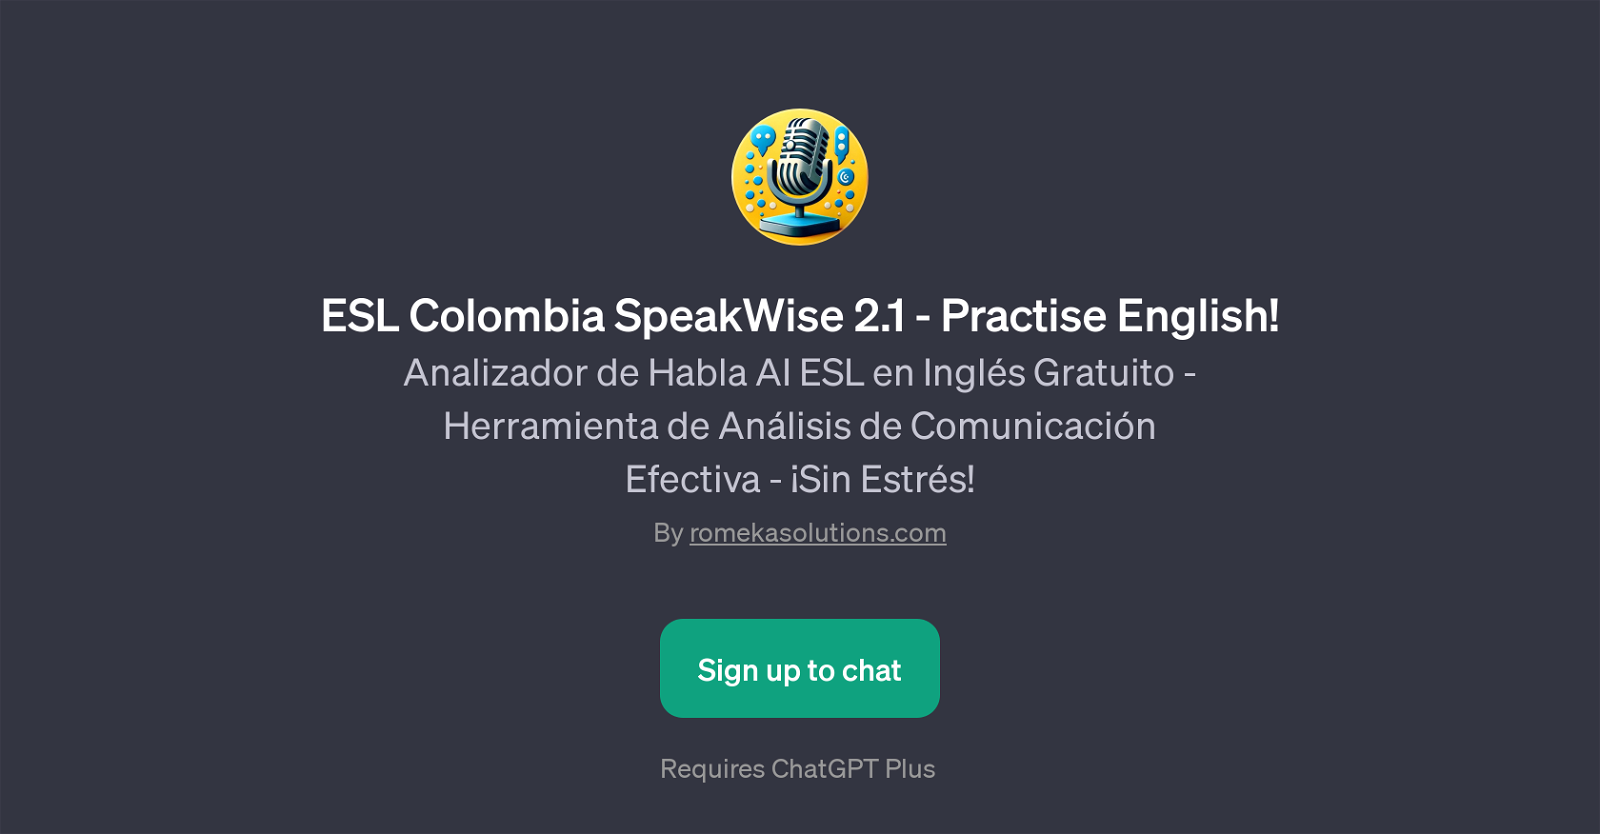 ESL Colombia SpeakWise 2.1 website